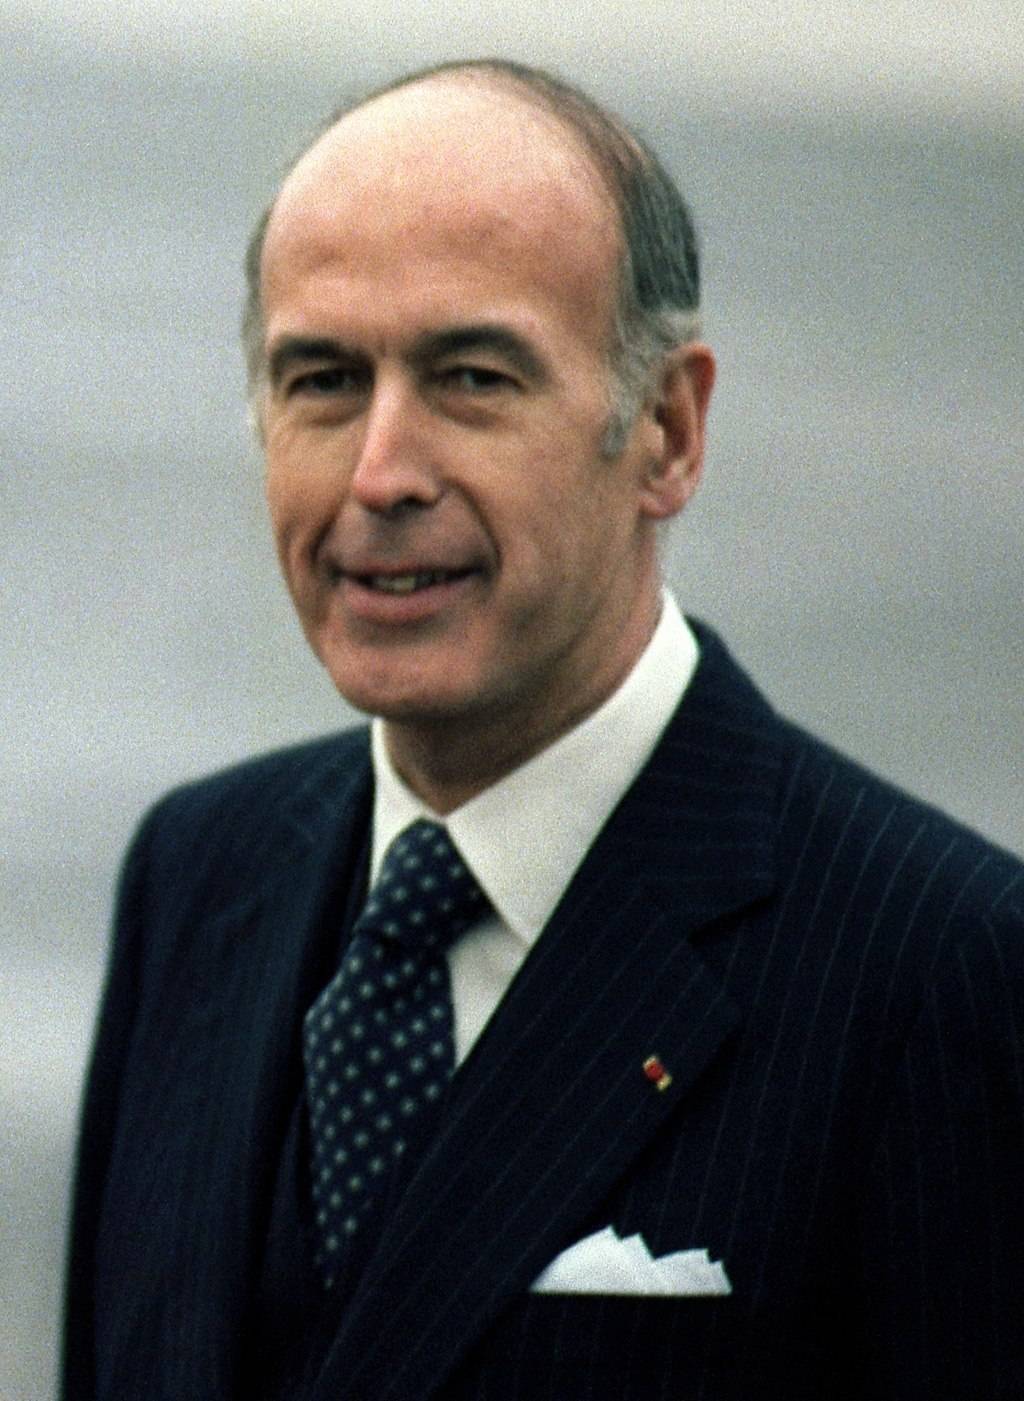 Addio Giscard d'Estaing il liberale primo in tutto re delle battaglie perse